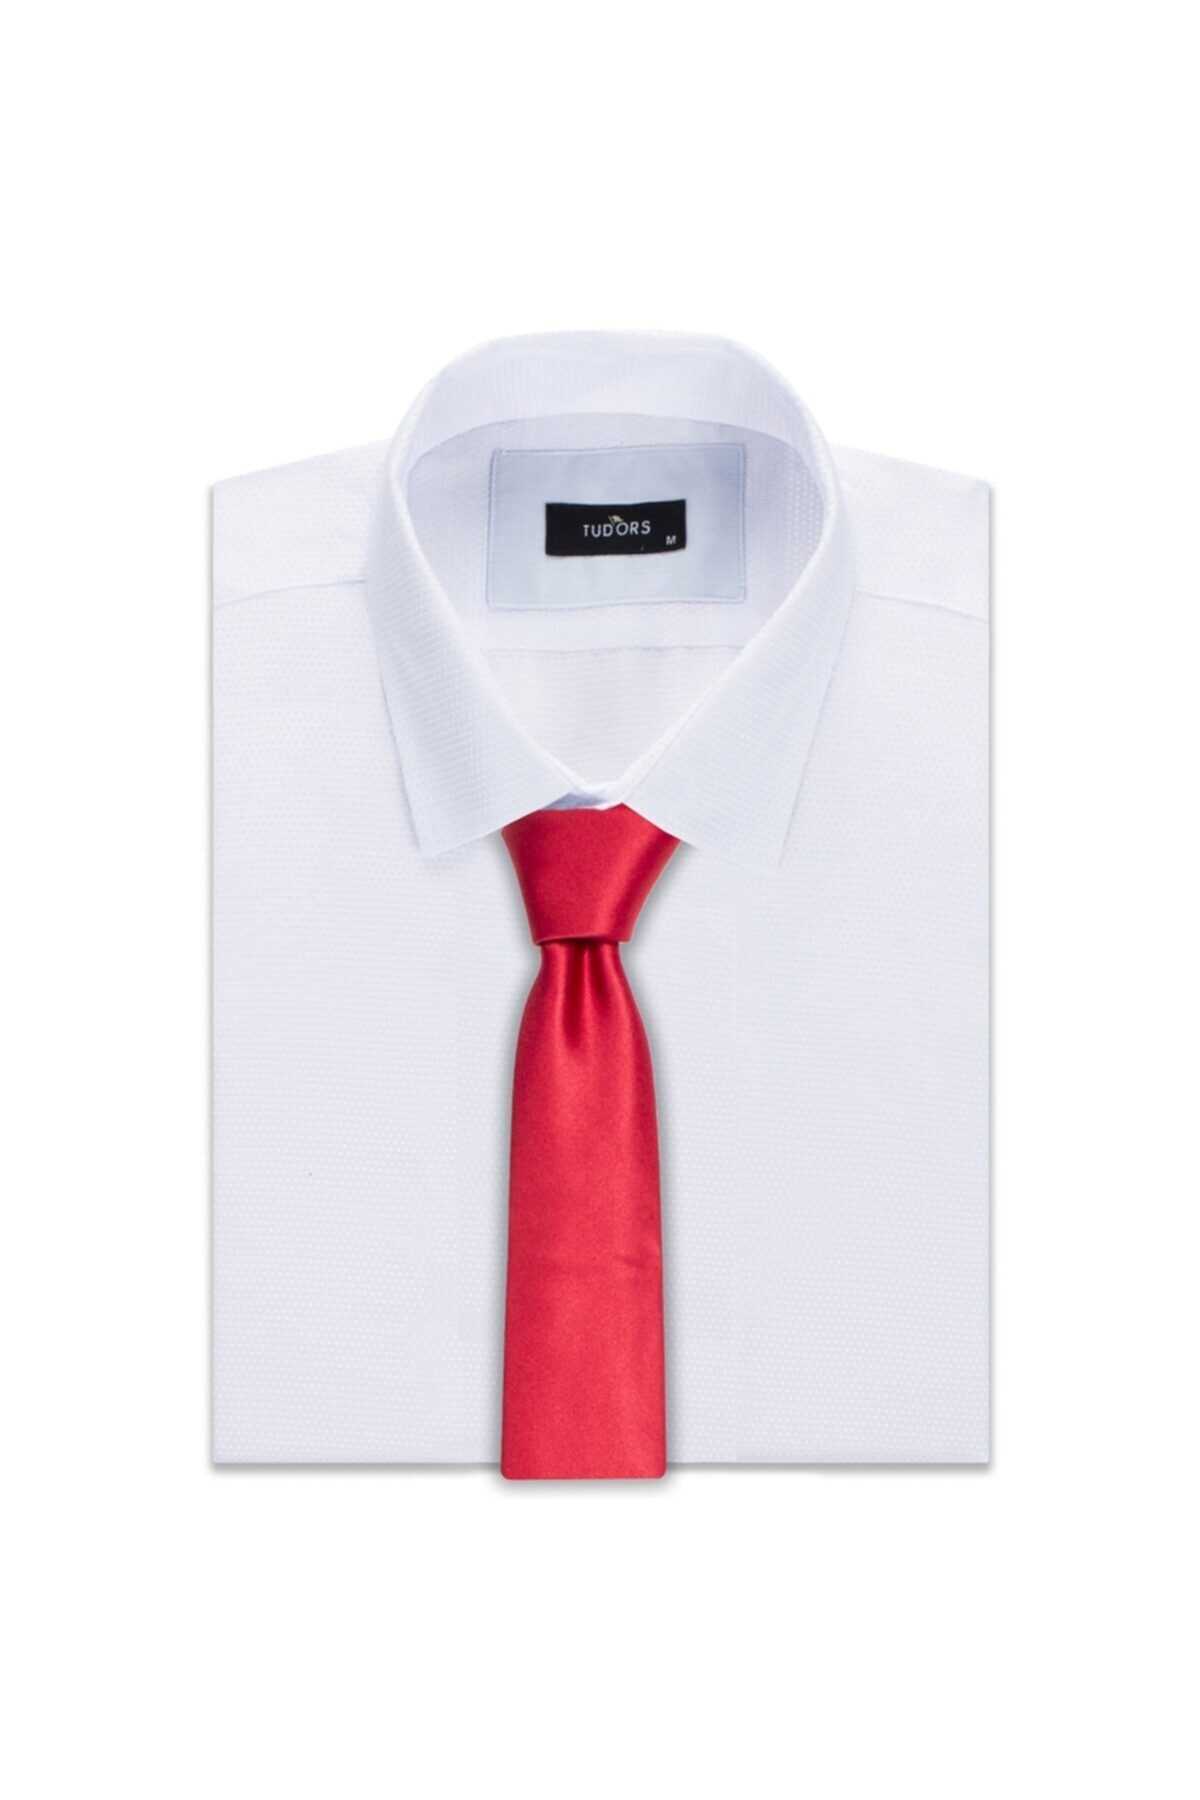 کراوات مردانه ارزان برند Tudors رنگ قرمز ty3294717